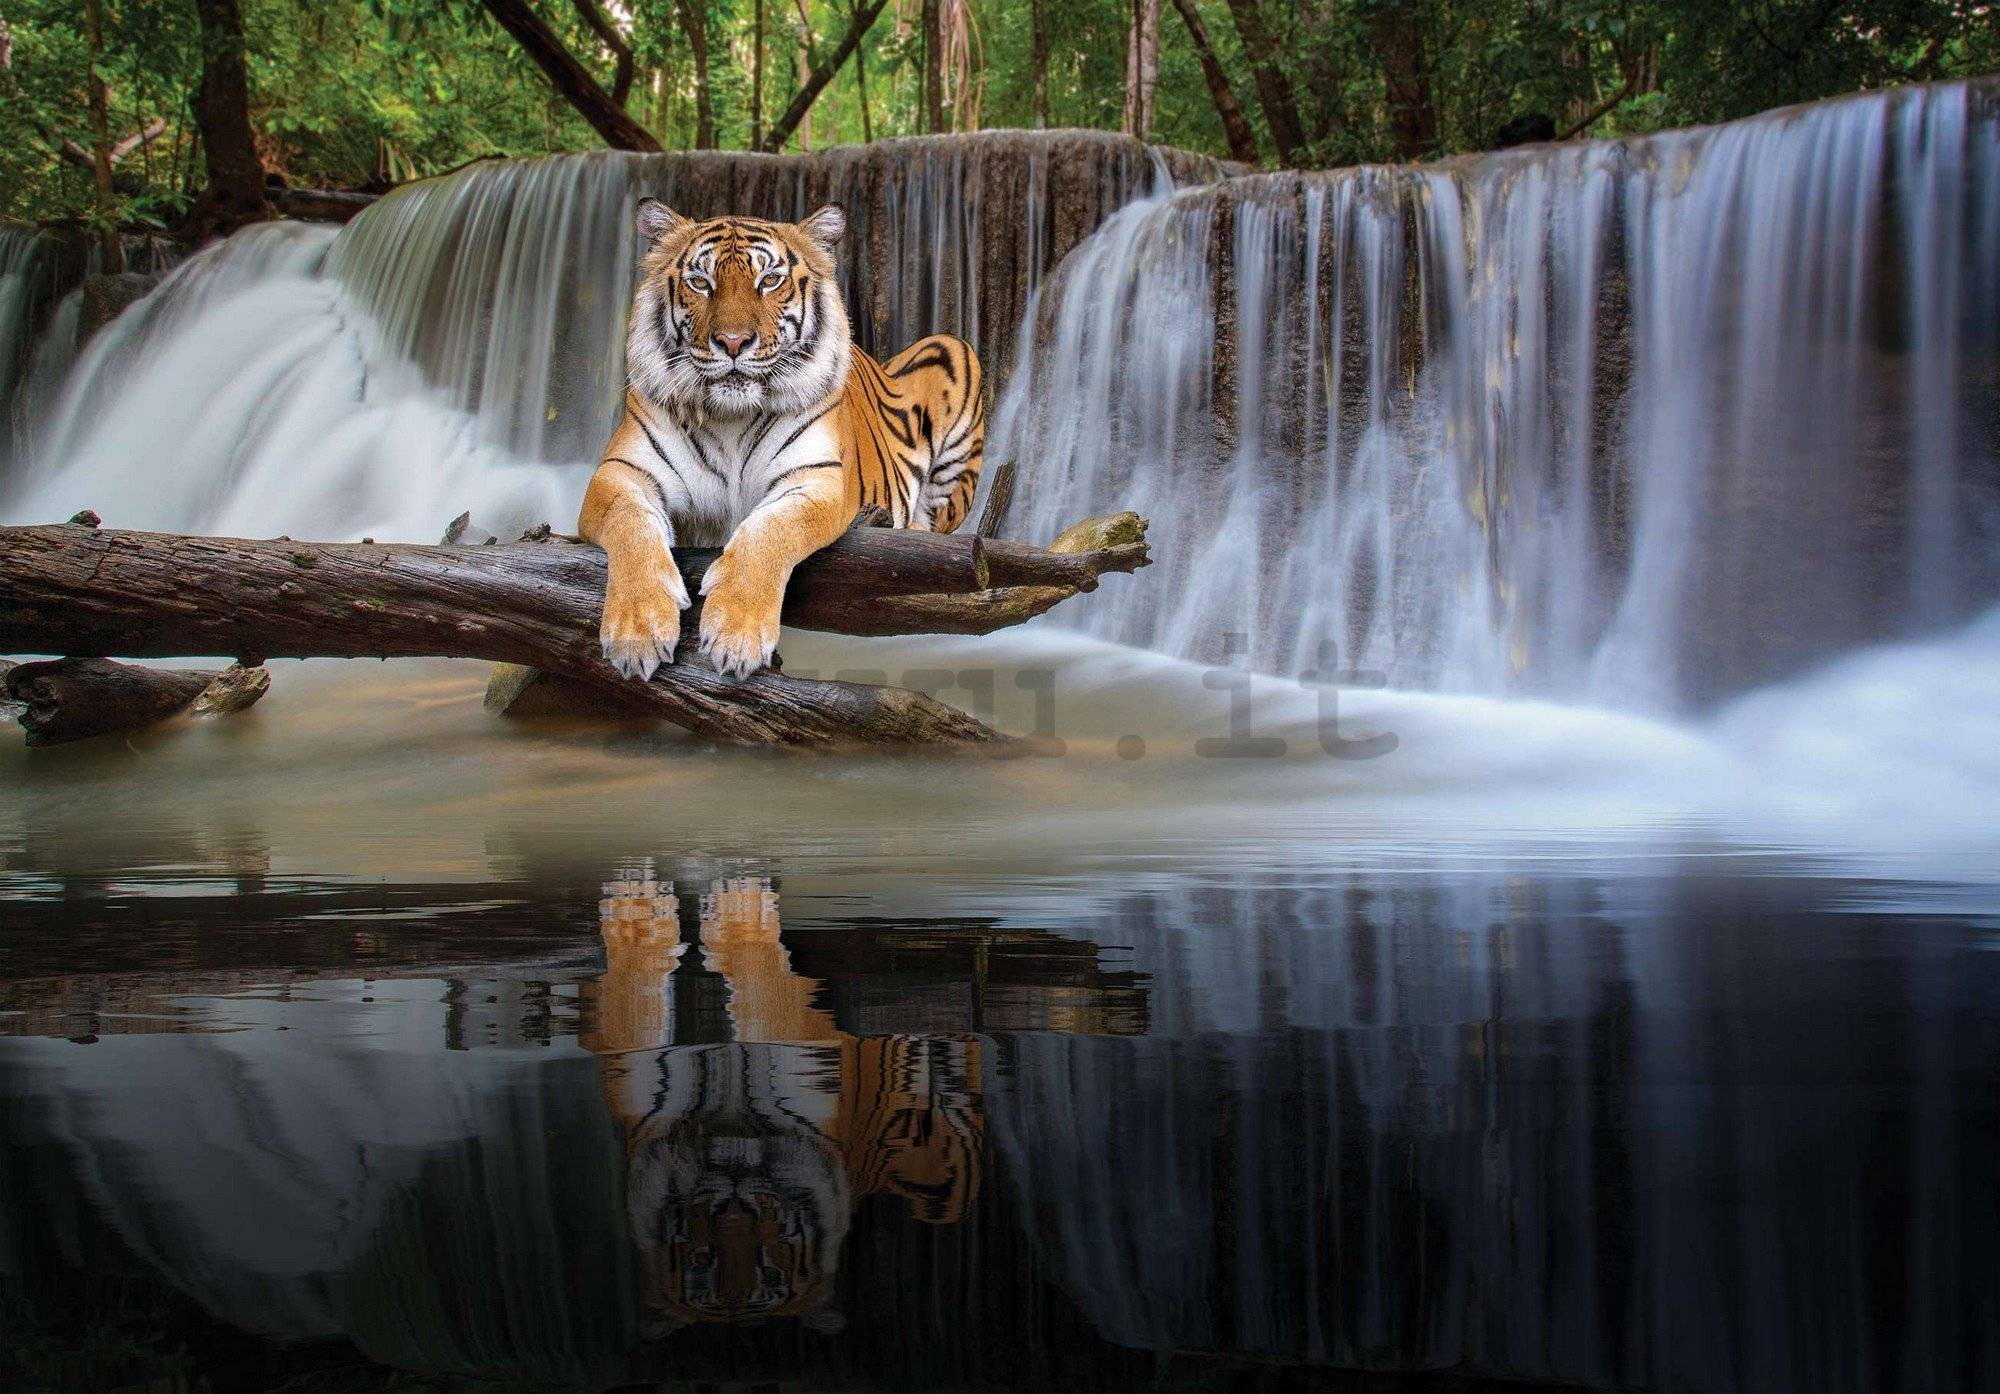 Fotomurale in TNT: La tigre alla cascata - 368x254 cm